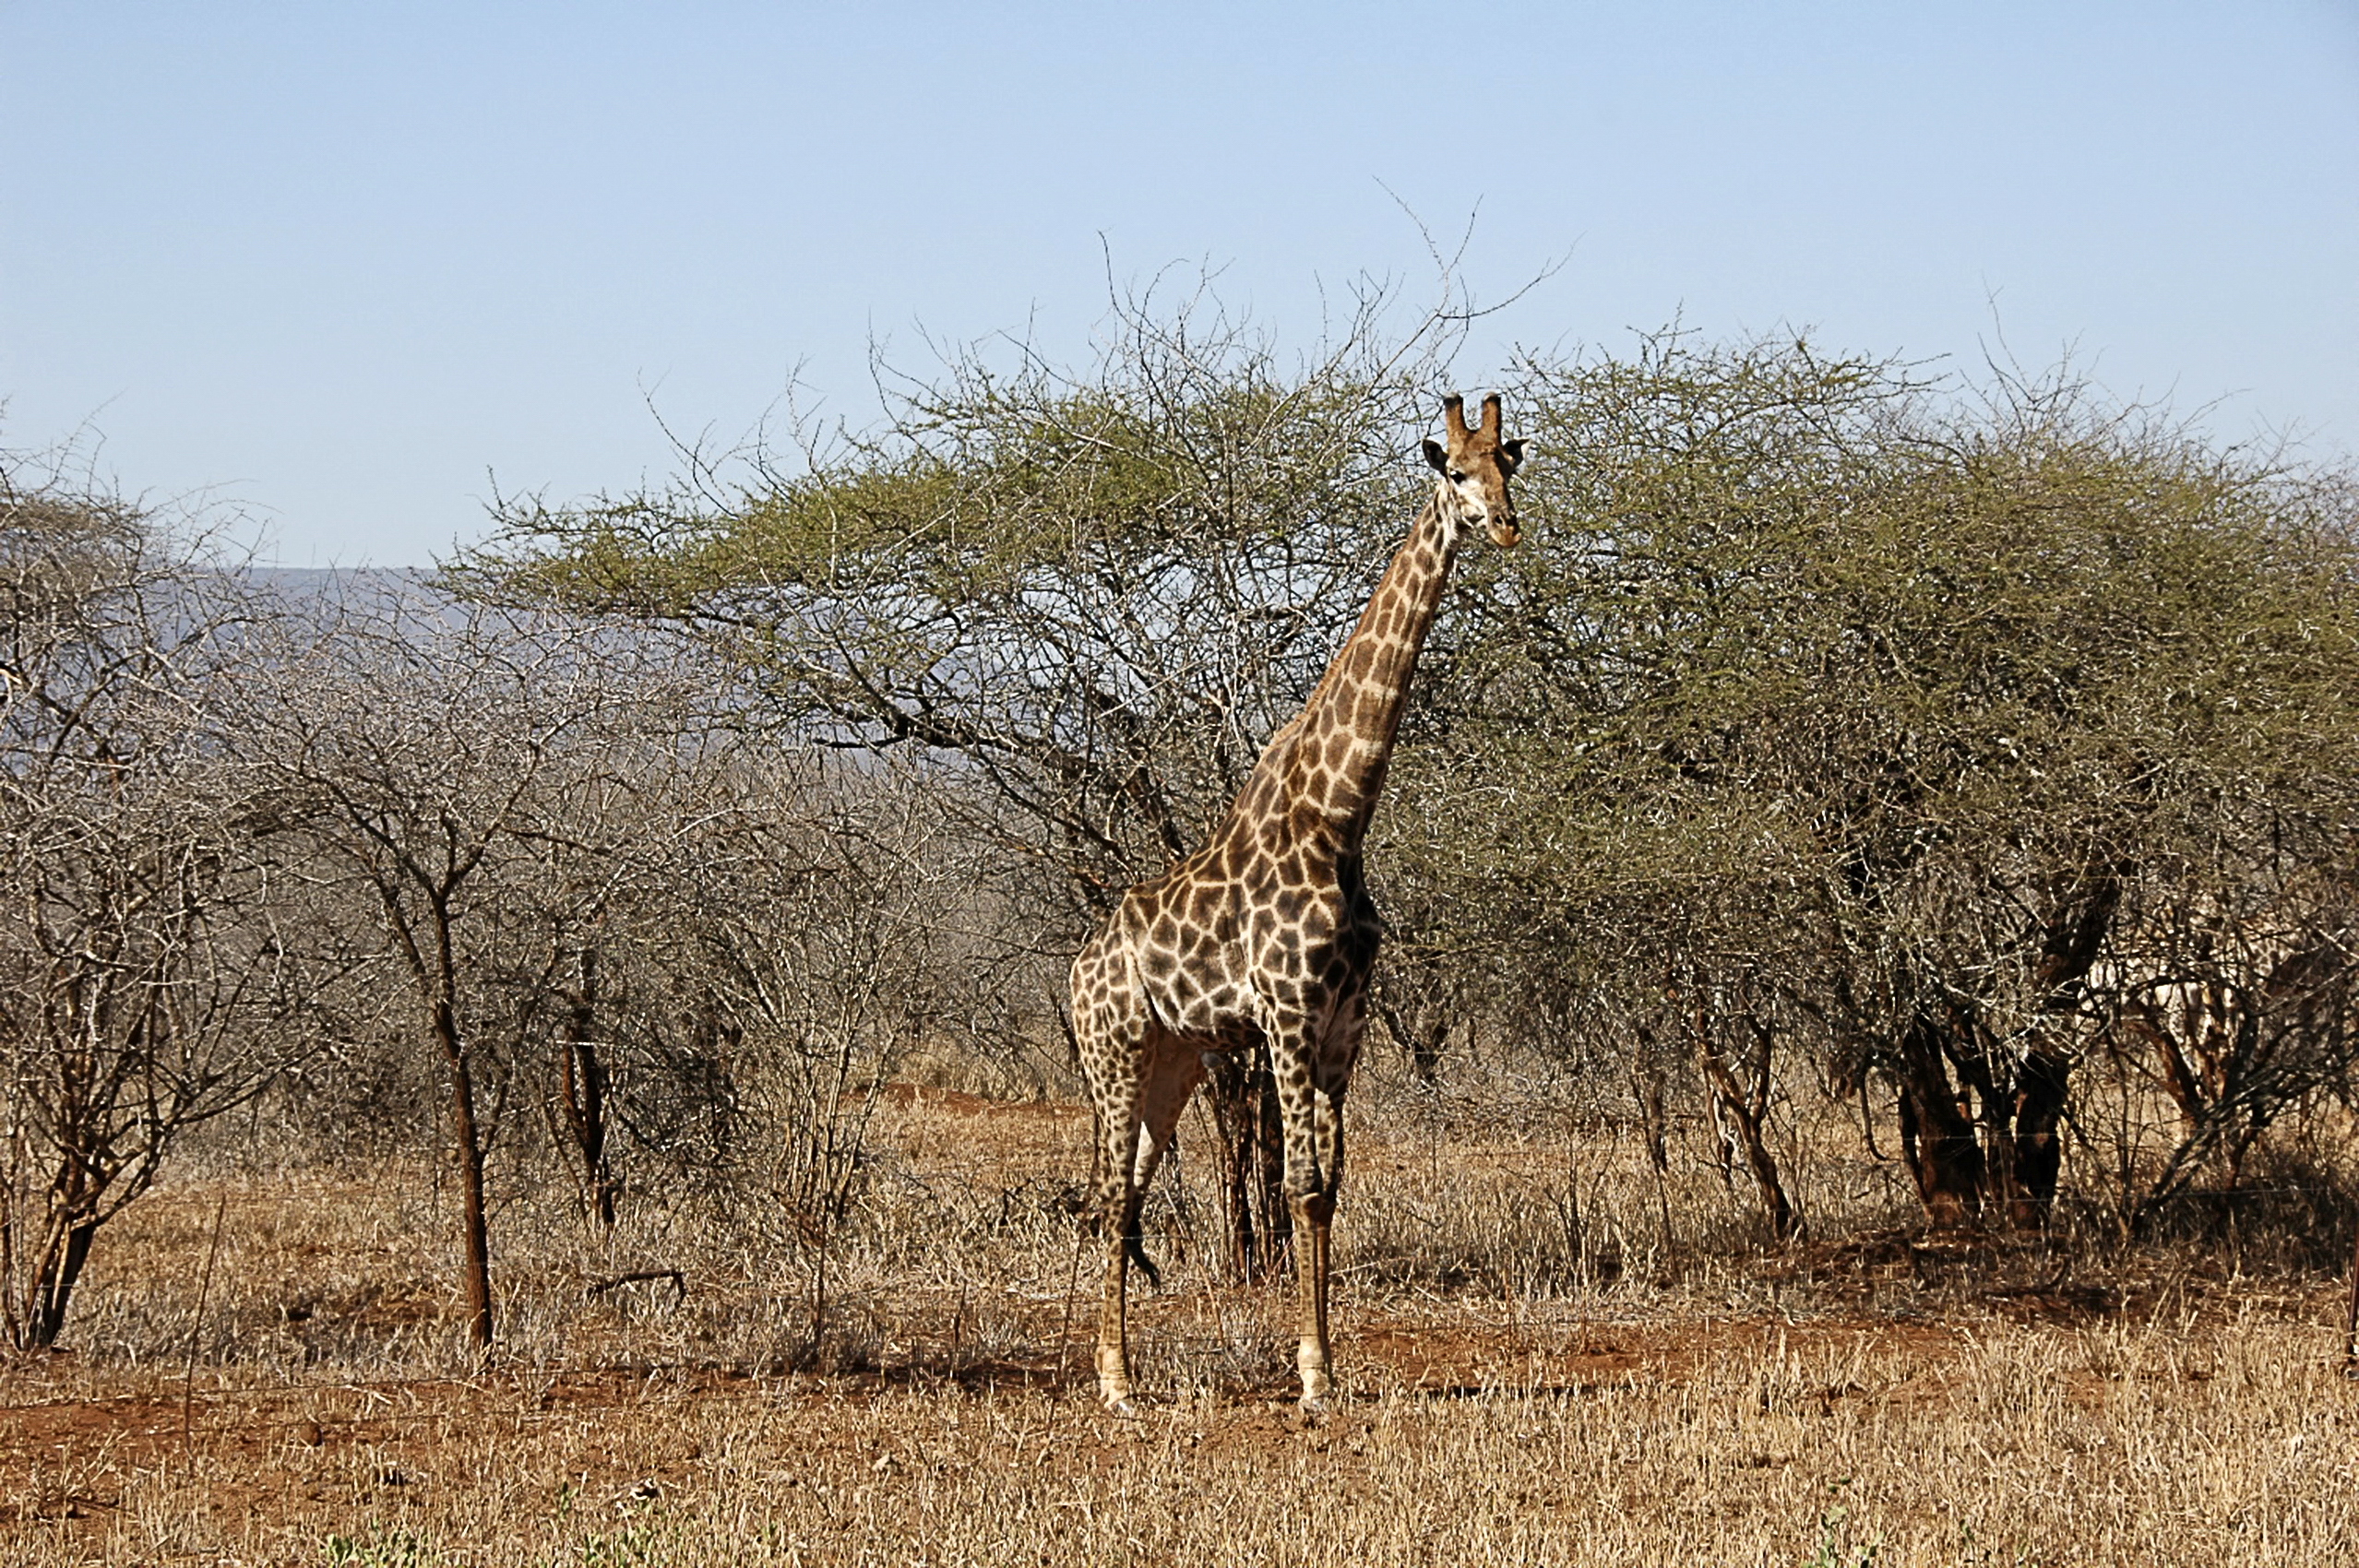 Giraffe in Swaziland's savannah